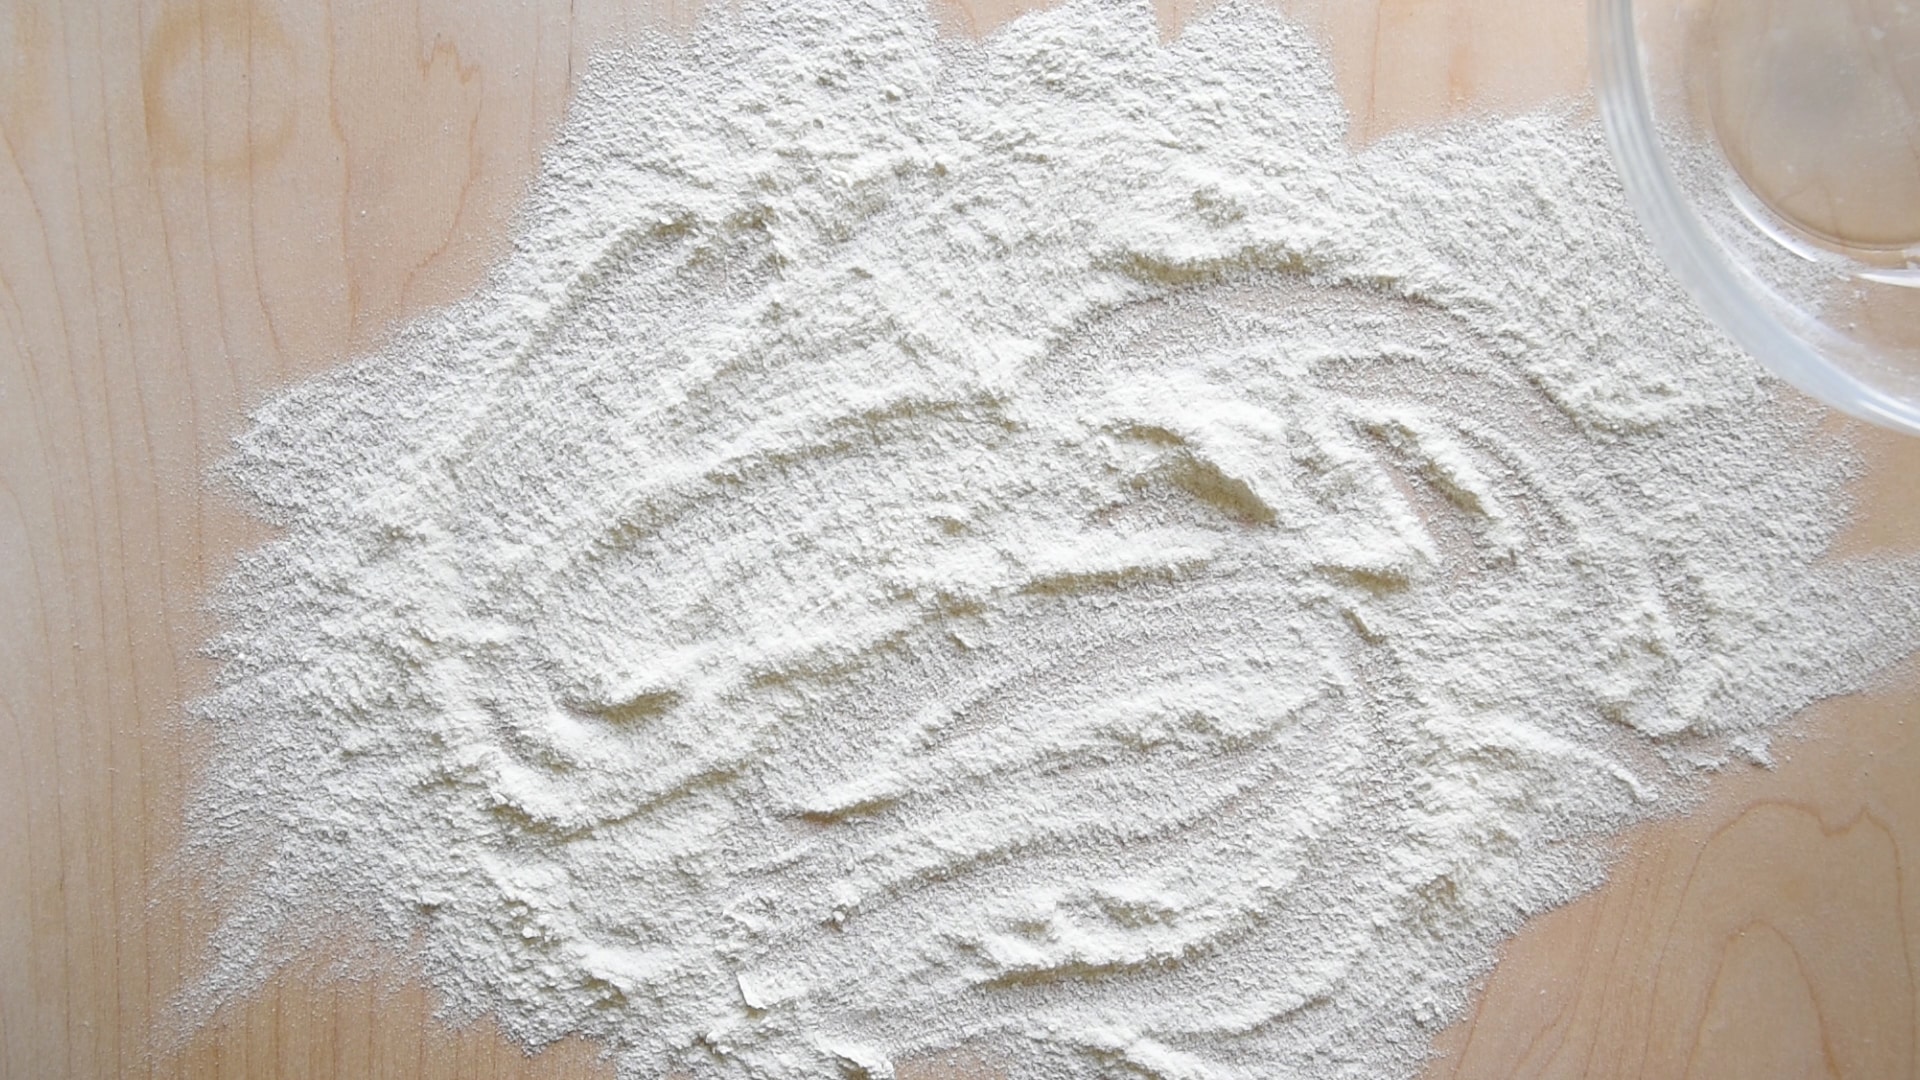 Flour a large flat surface 